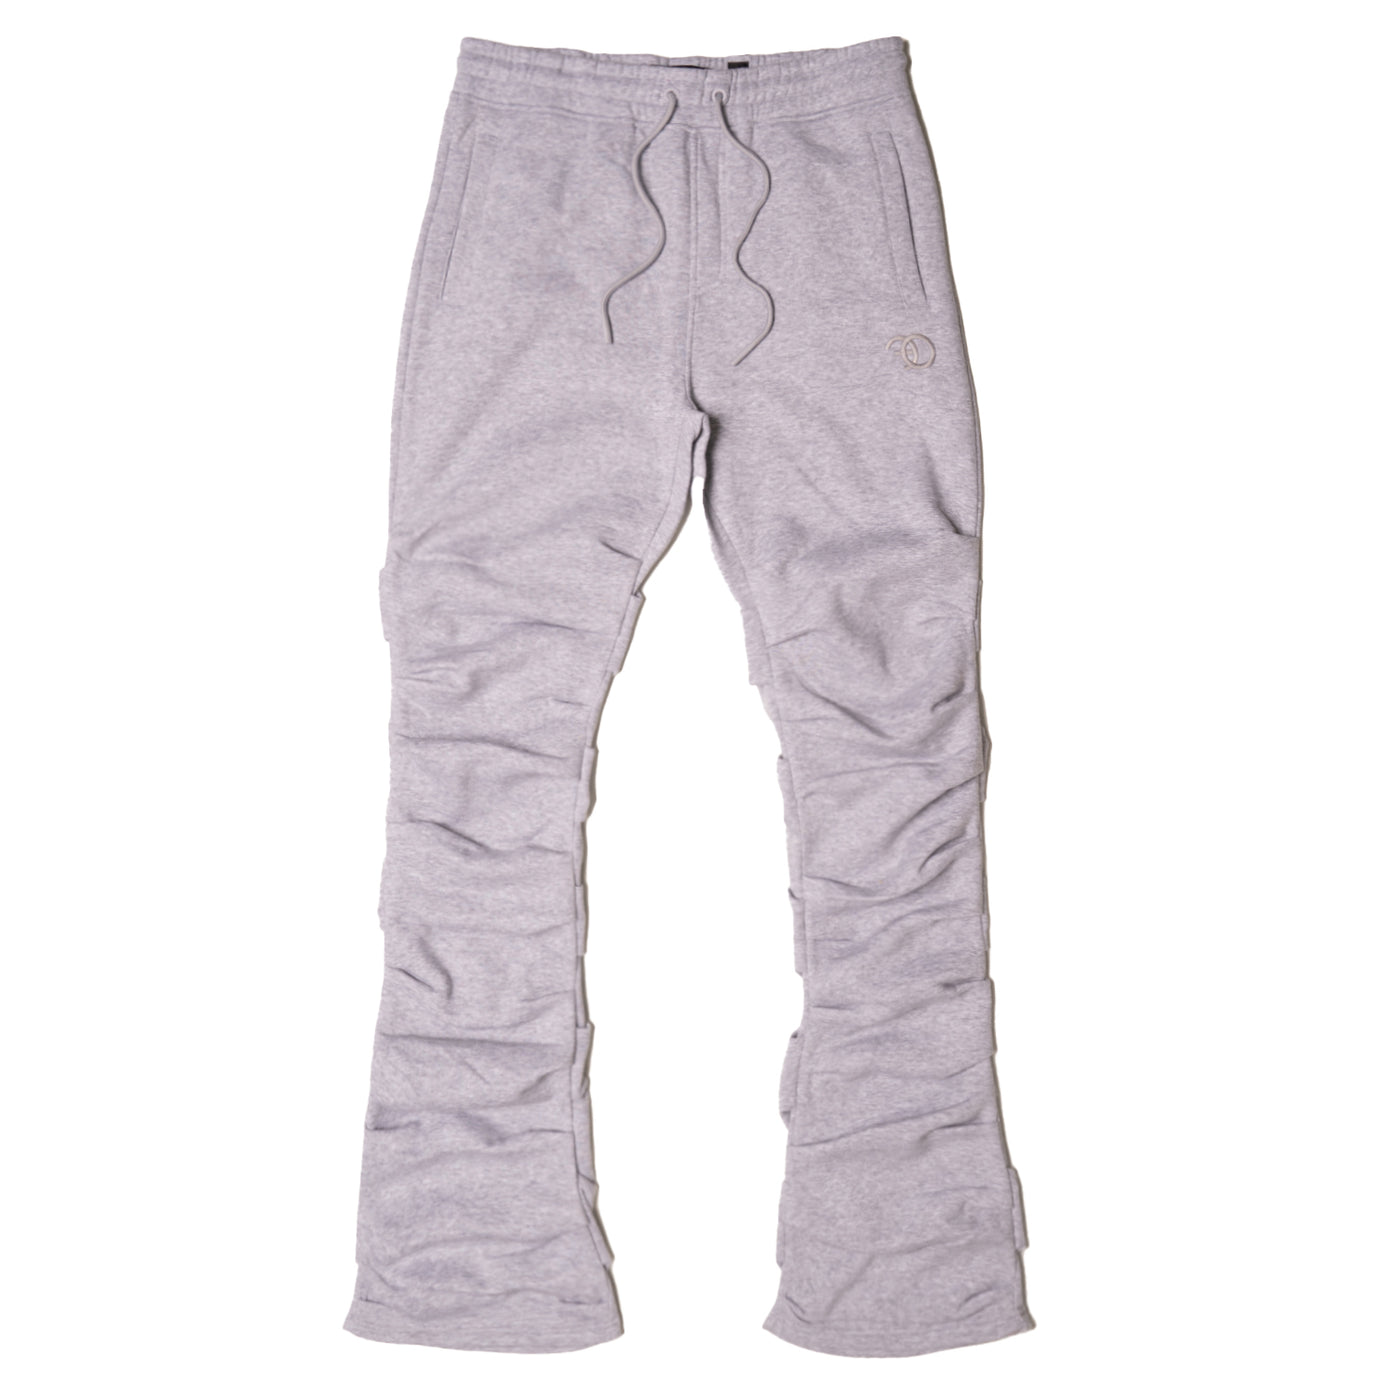 F6220 Malik Stacked Sweatpants - Gray